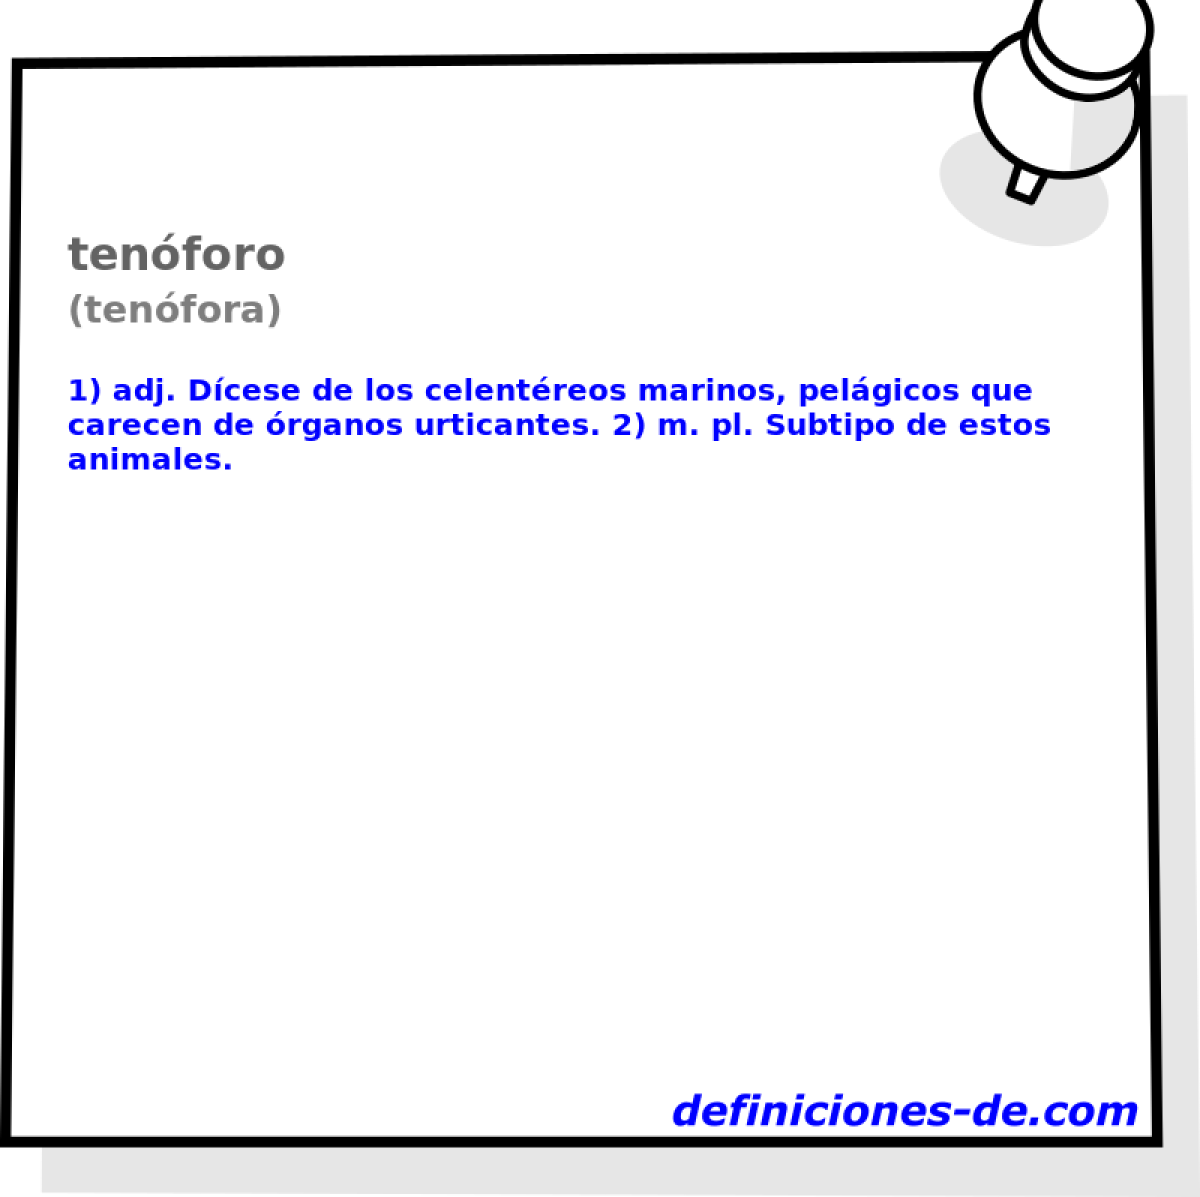 tenforo (tenfora)